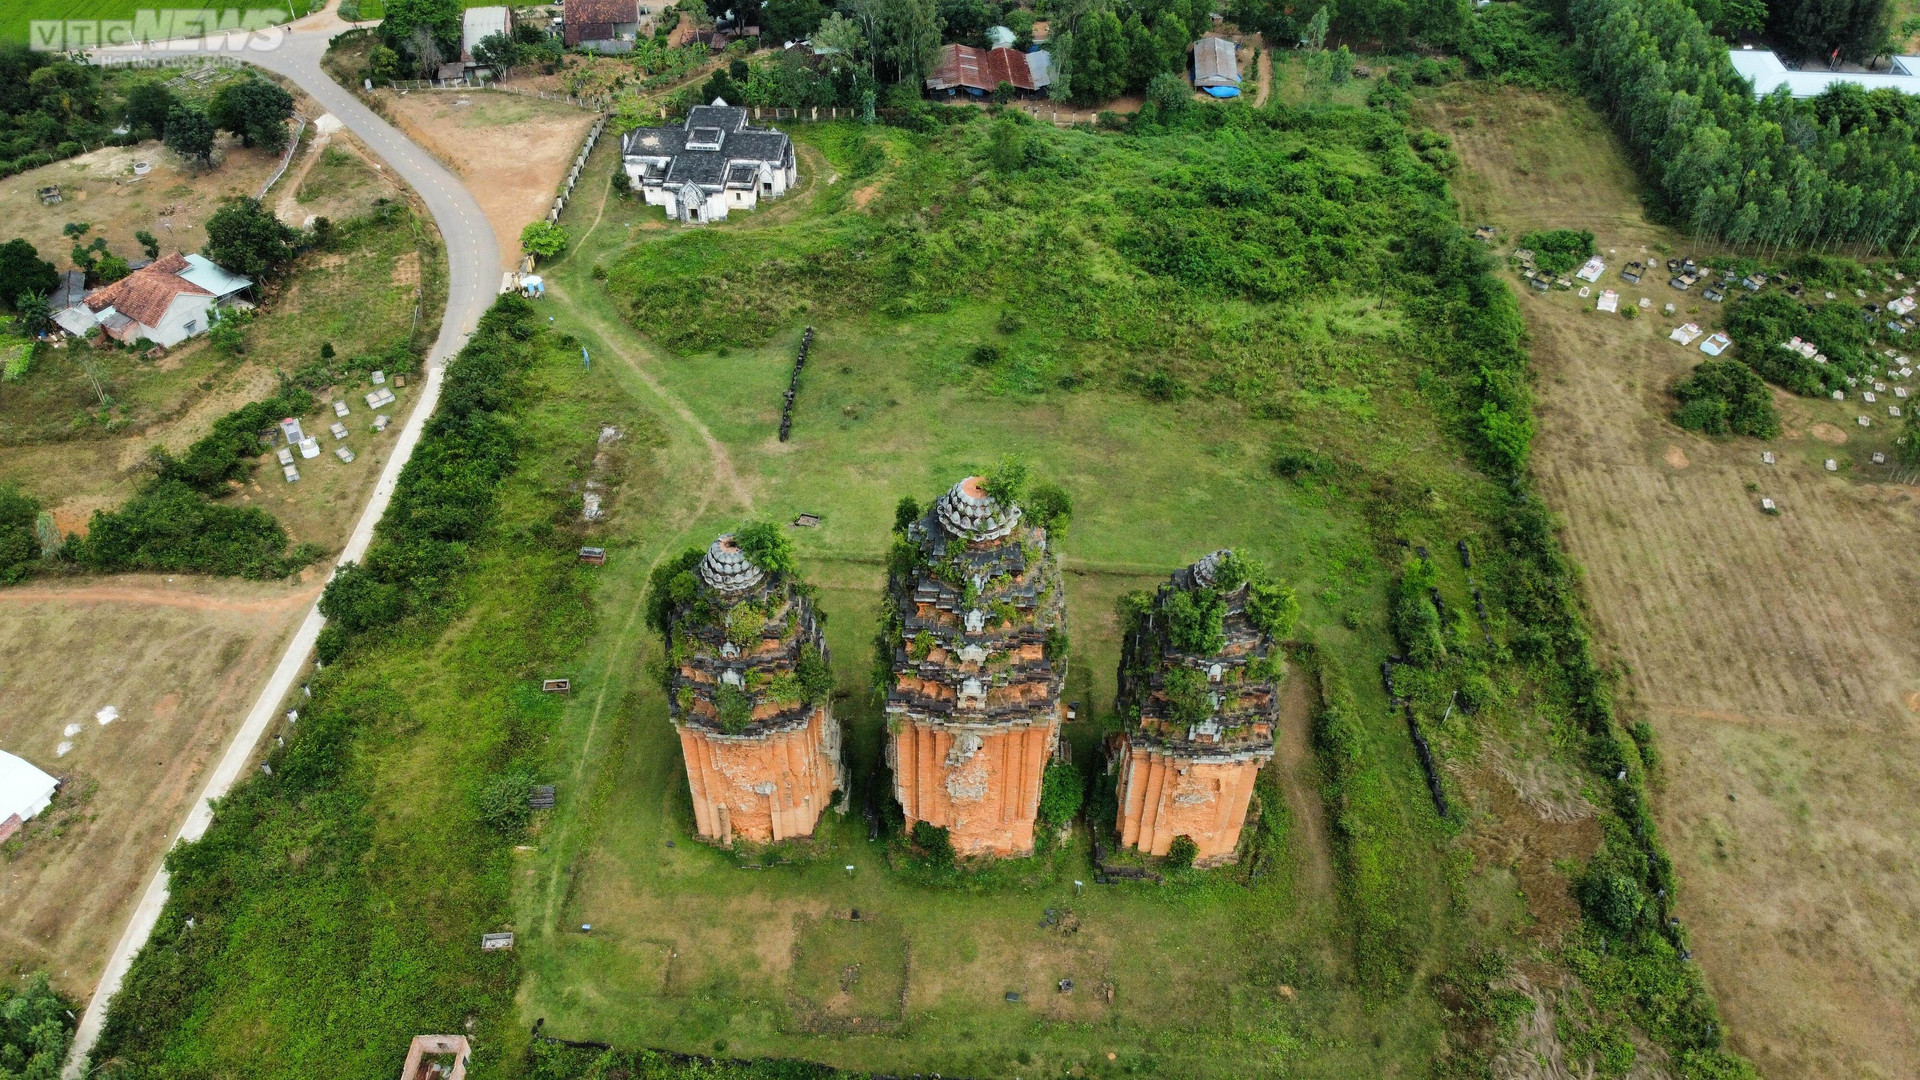 Tháp Chăm cổ ở Bình Định bị đập phá tường, thành nơi hút cỏ của nhiều đối tượng - 10